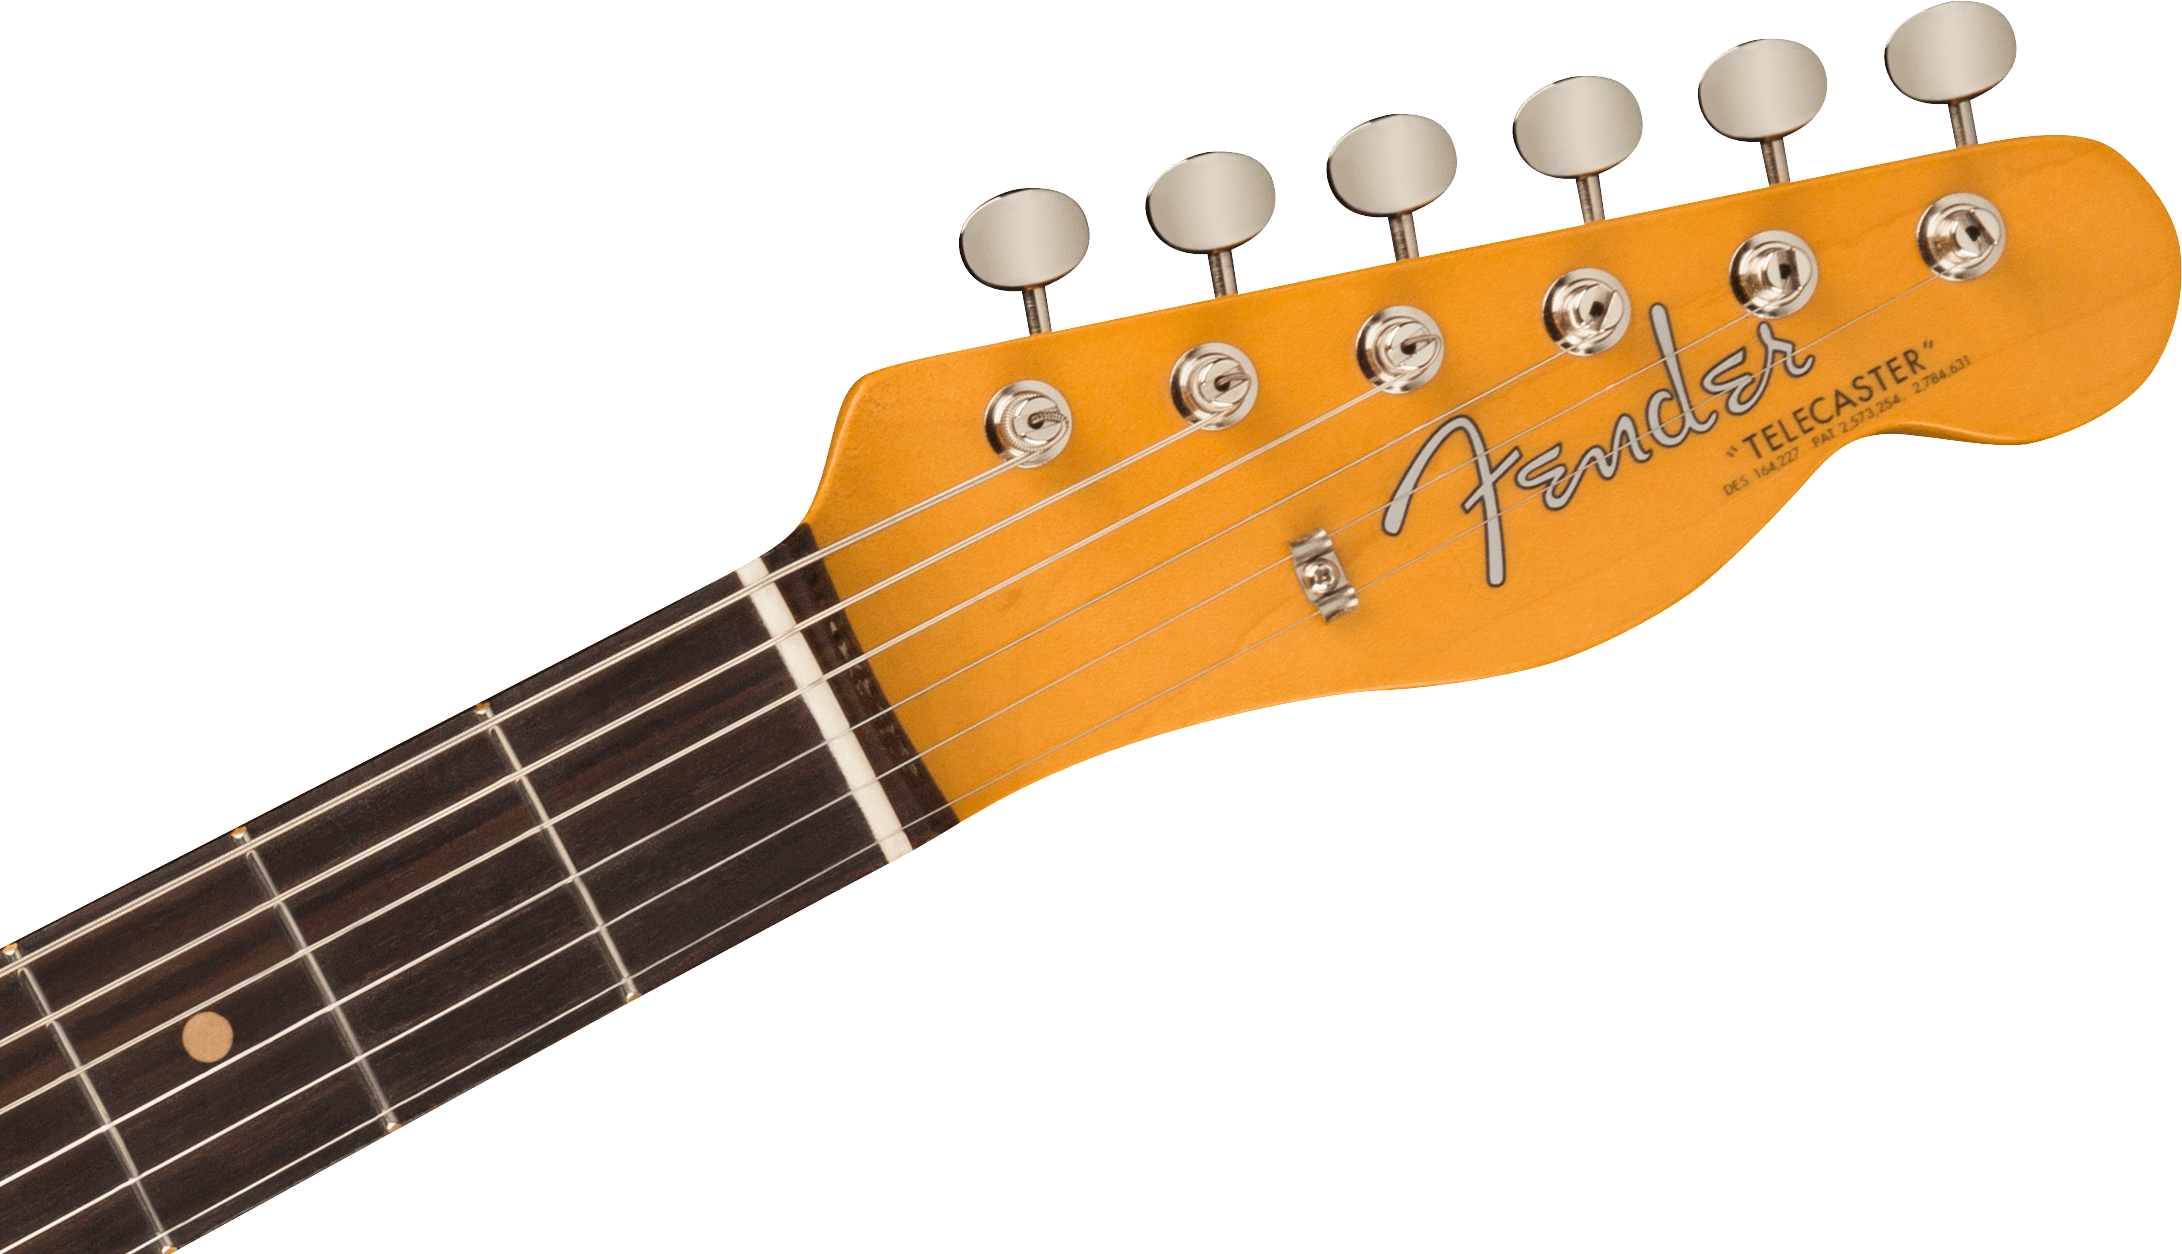 Fender American Vintage II 1963 Telecaster®, Rosewood Fingerboard, 3-Color Sunburst